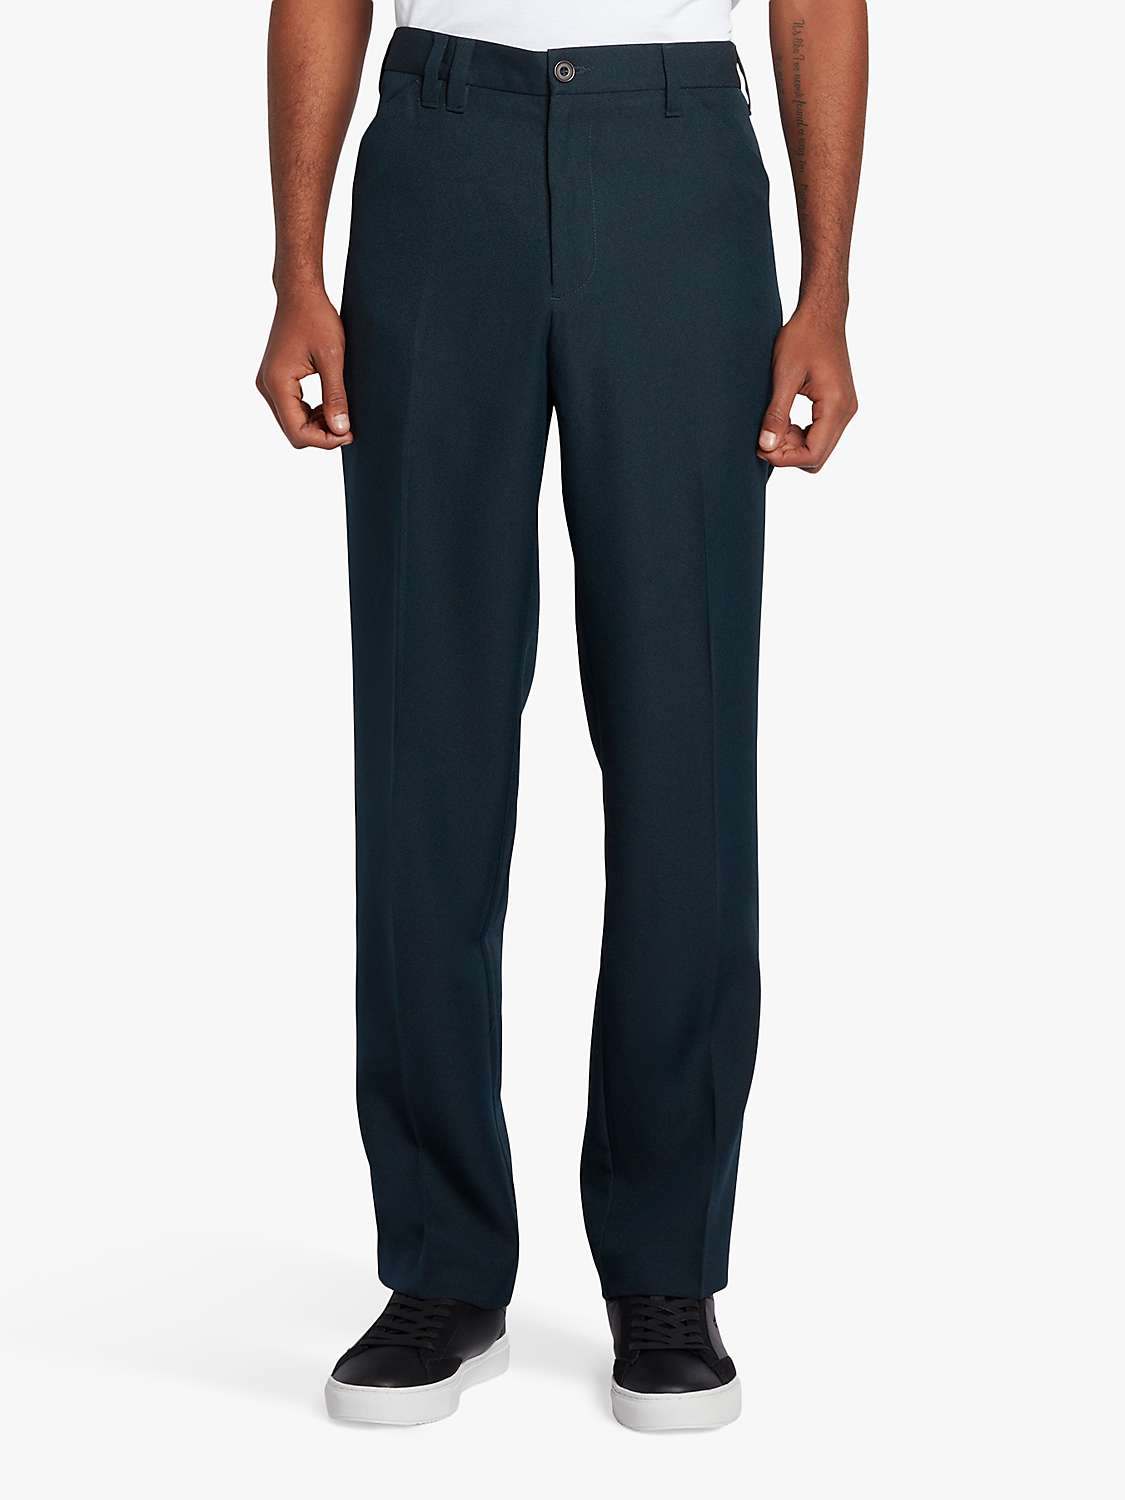 Buy Farah Ladbroke Hopsack Straight Fit Trousers, 412 True Navy Online at johnlewis.com